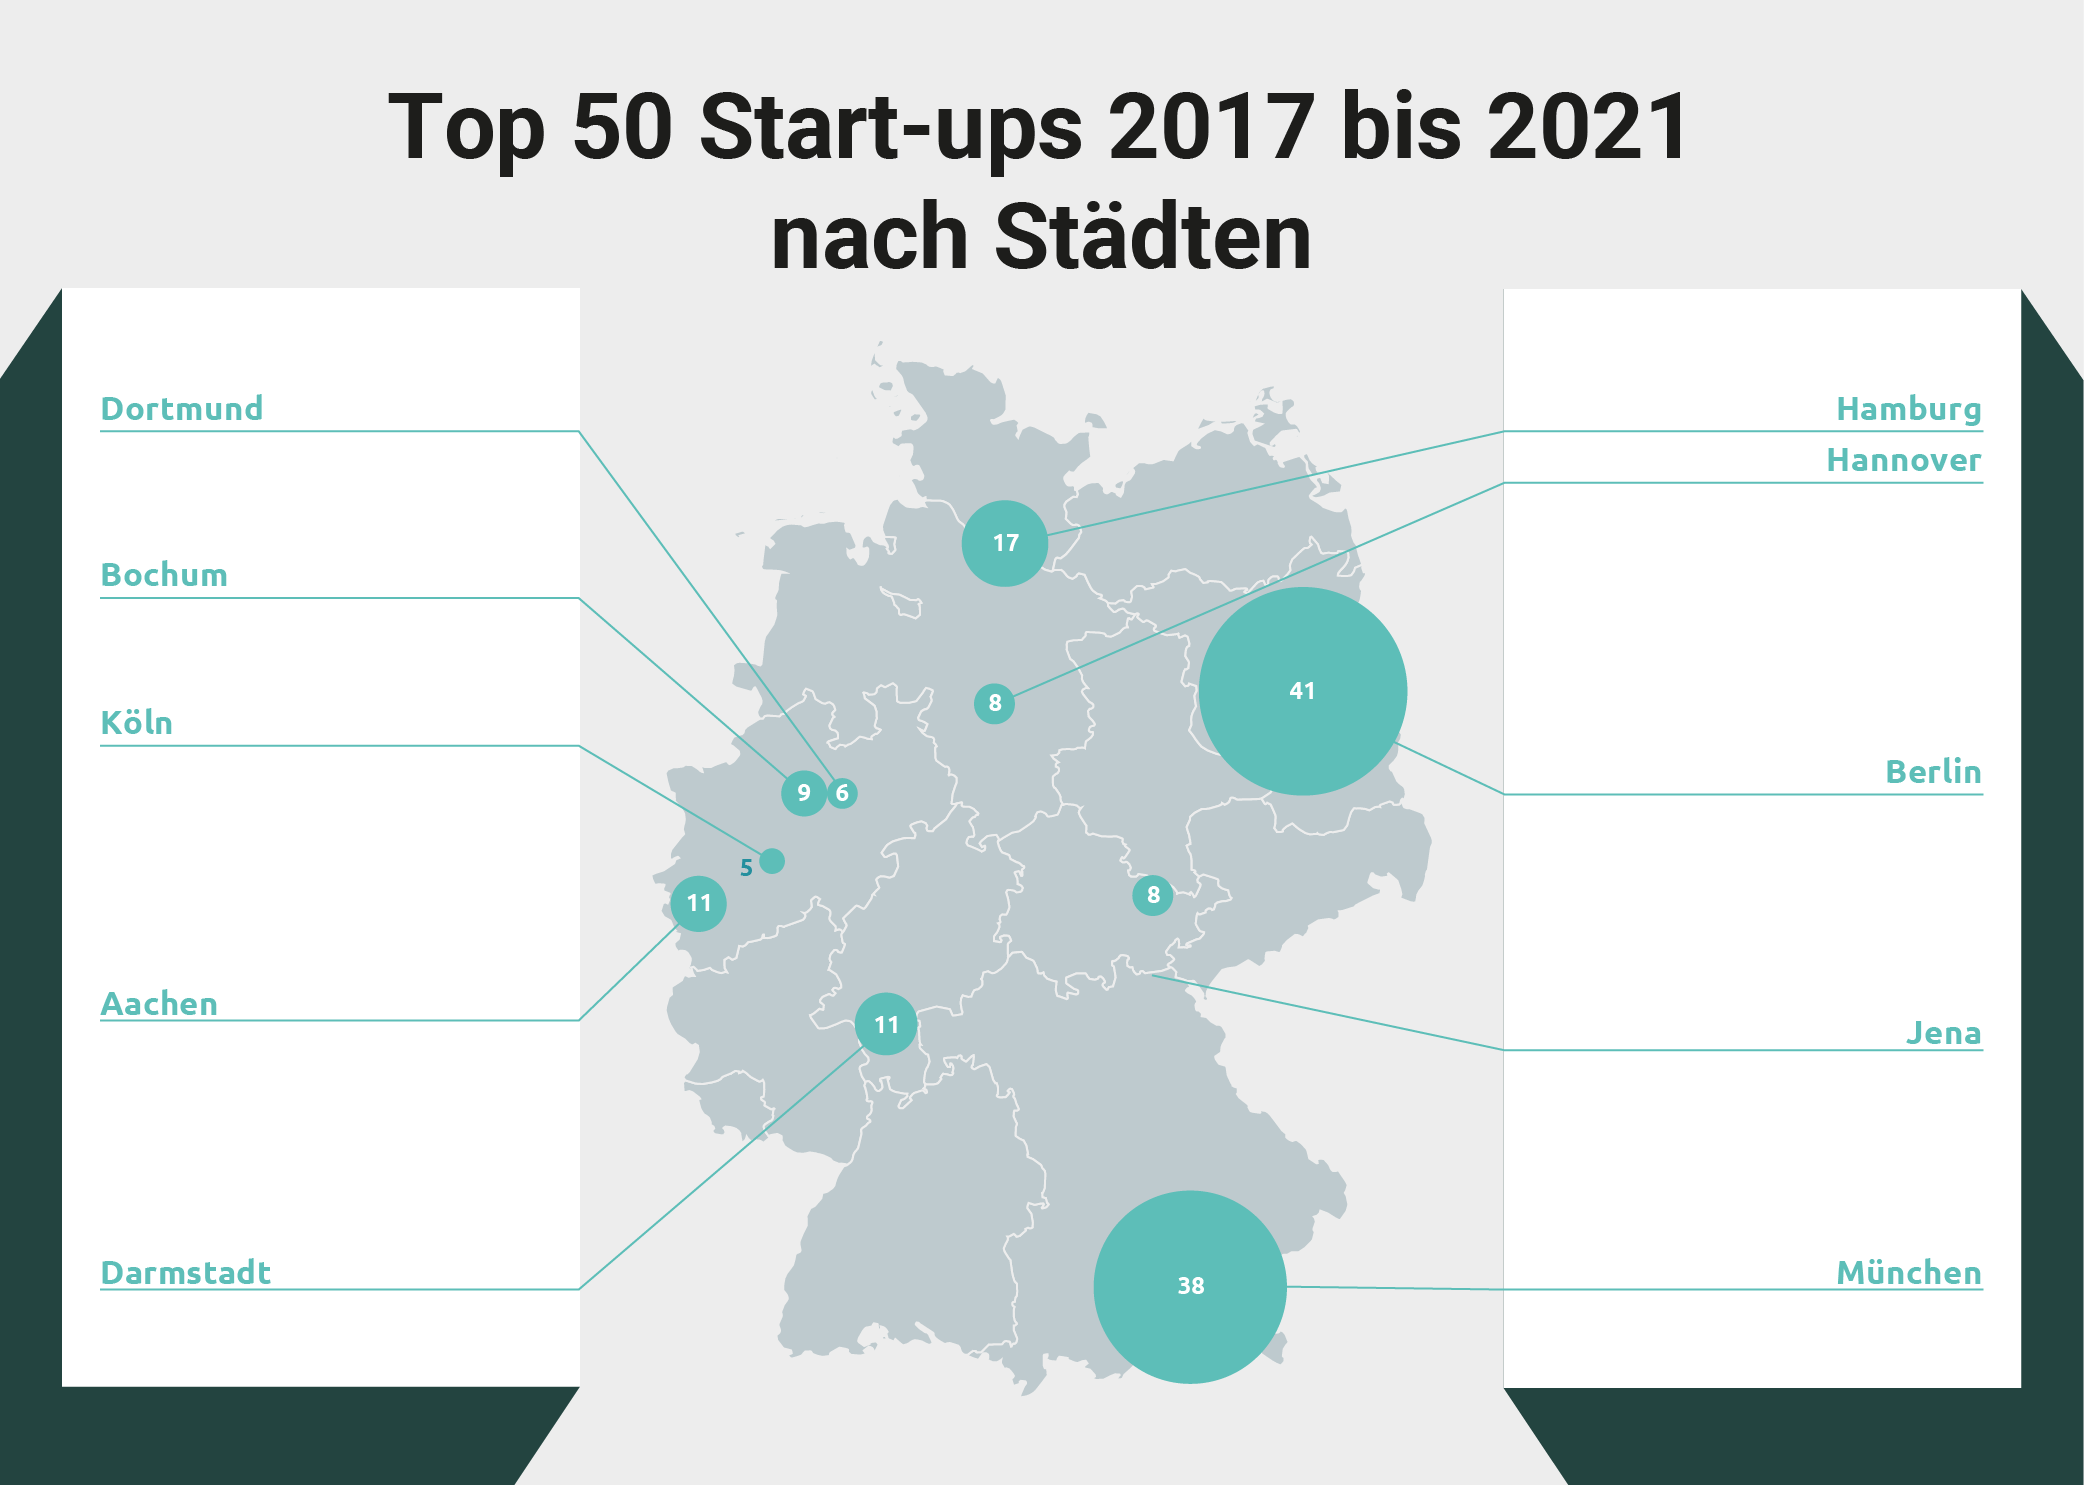 Die Städte mit den meisten Top 50 Start-ups 2017 bis 2021